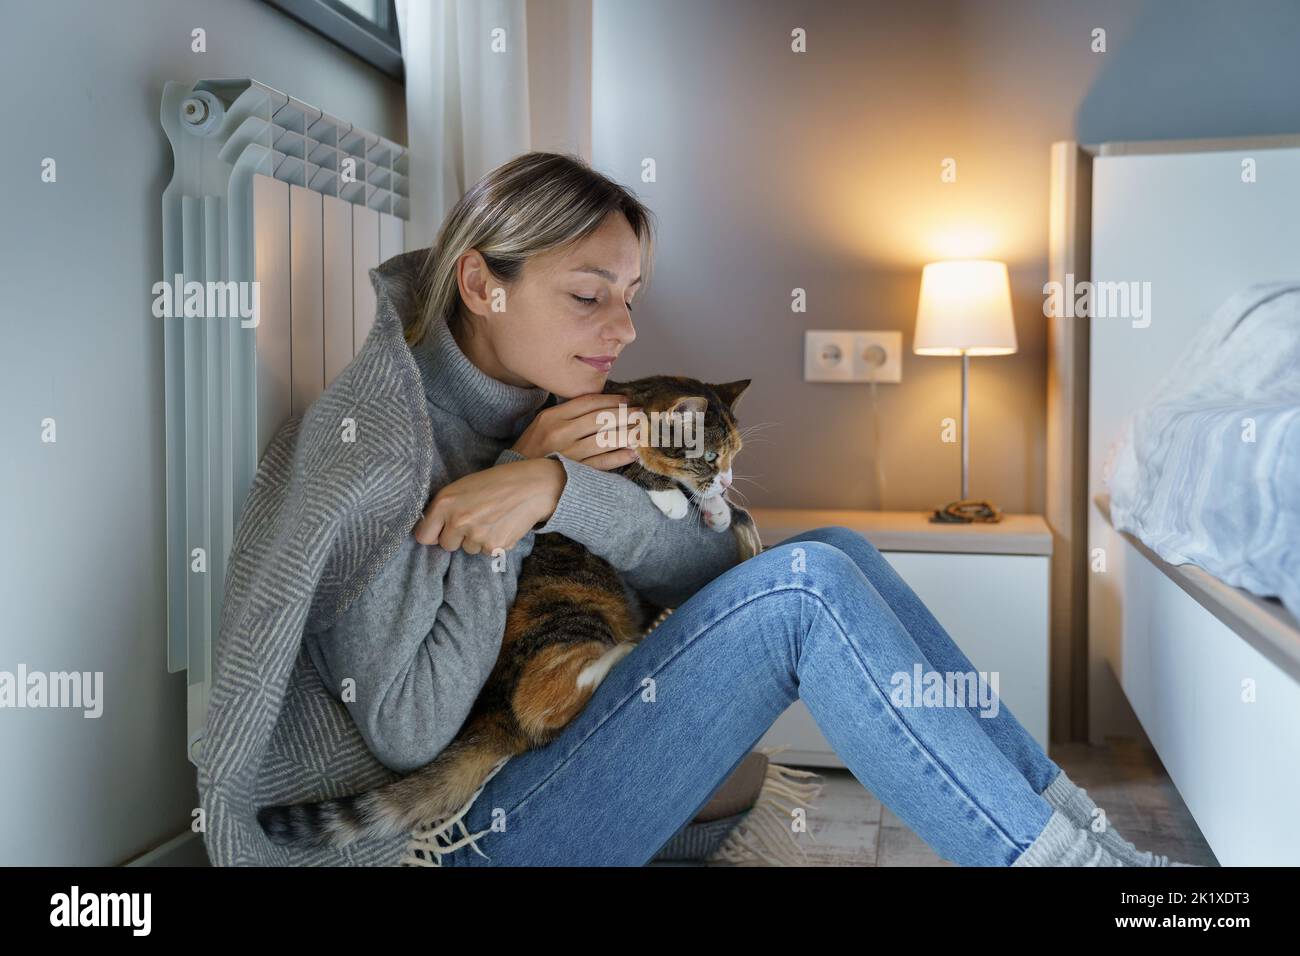 Mujer joven cubierta con manta caliente disfruta abrazando el gato y permaneciendo en casa con su mascota favorita Foto de stock